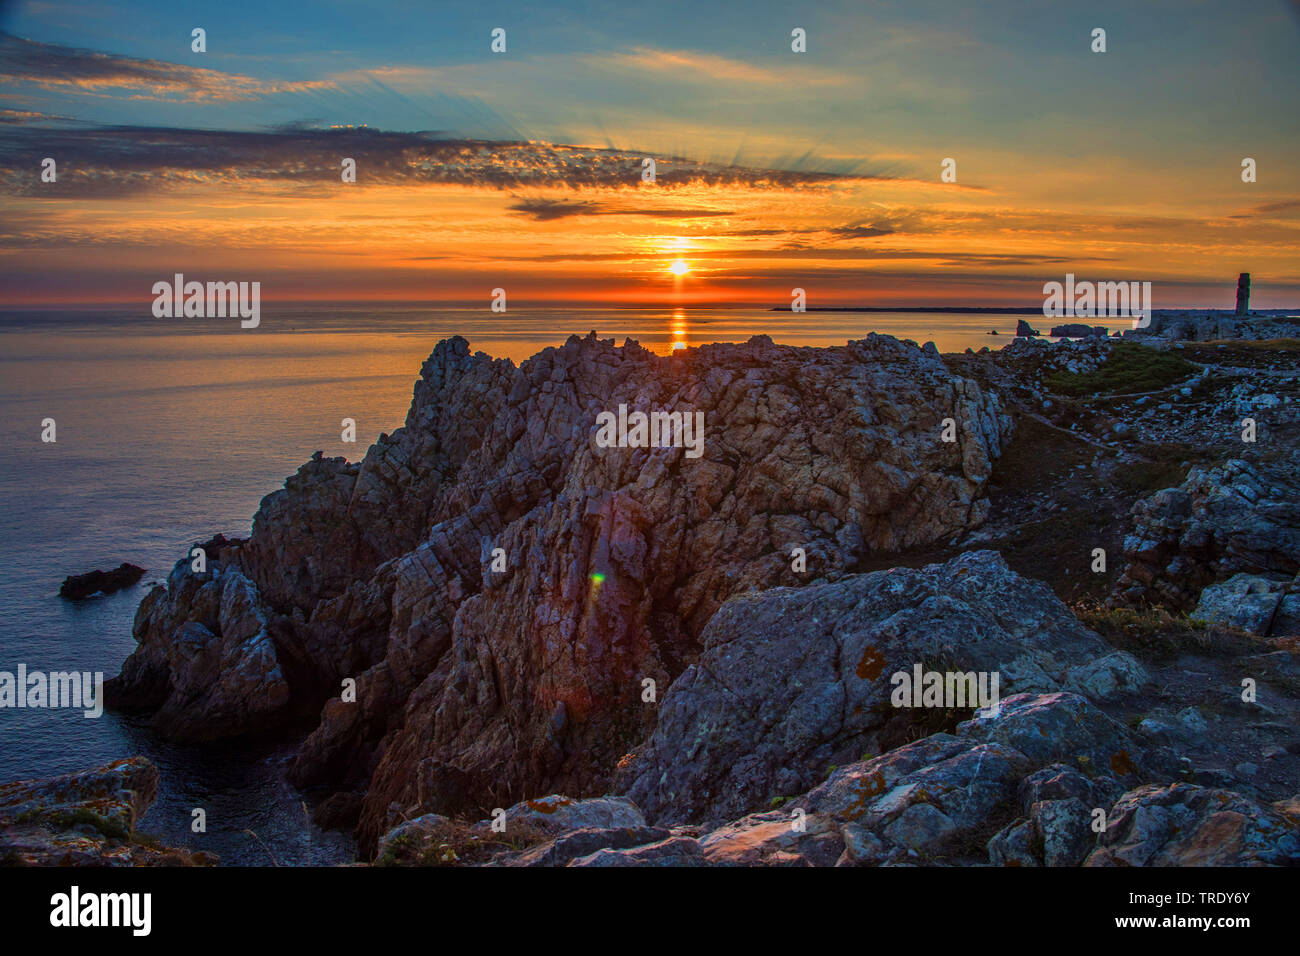 La côte atlantique la pointe de Penhir en rouge coucher du soleil, France, Bretagne, Crozon Banque D'Images